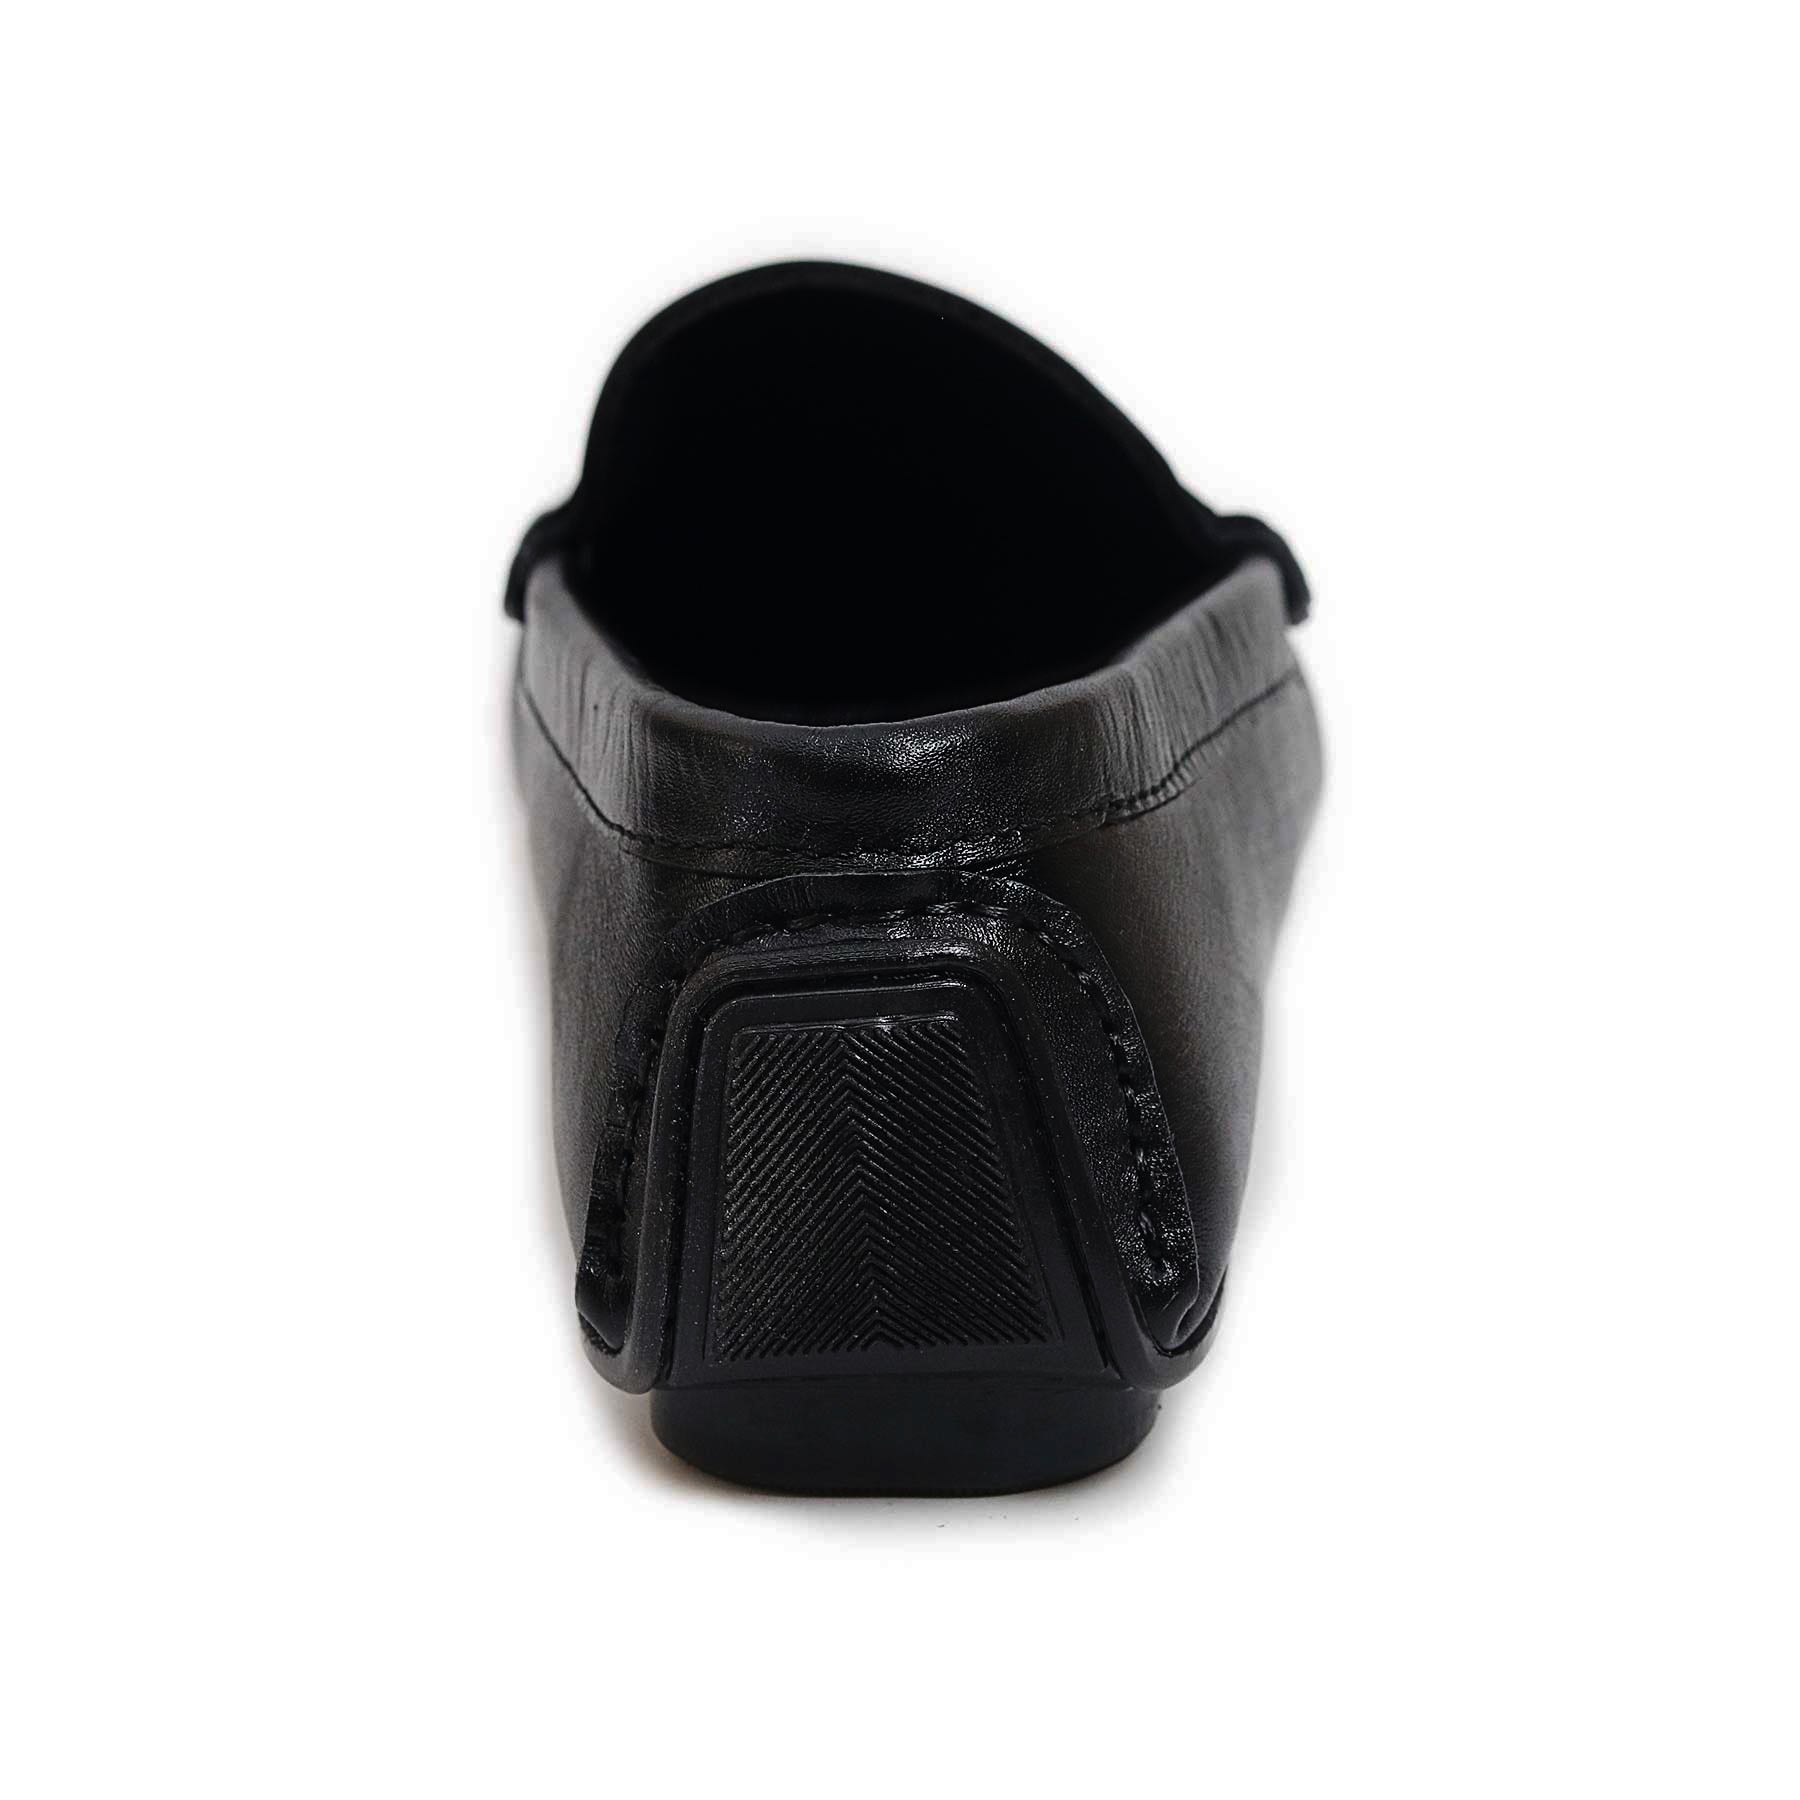 Zays Leather Loafer Shoe For Men (Black) - SF77